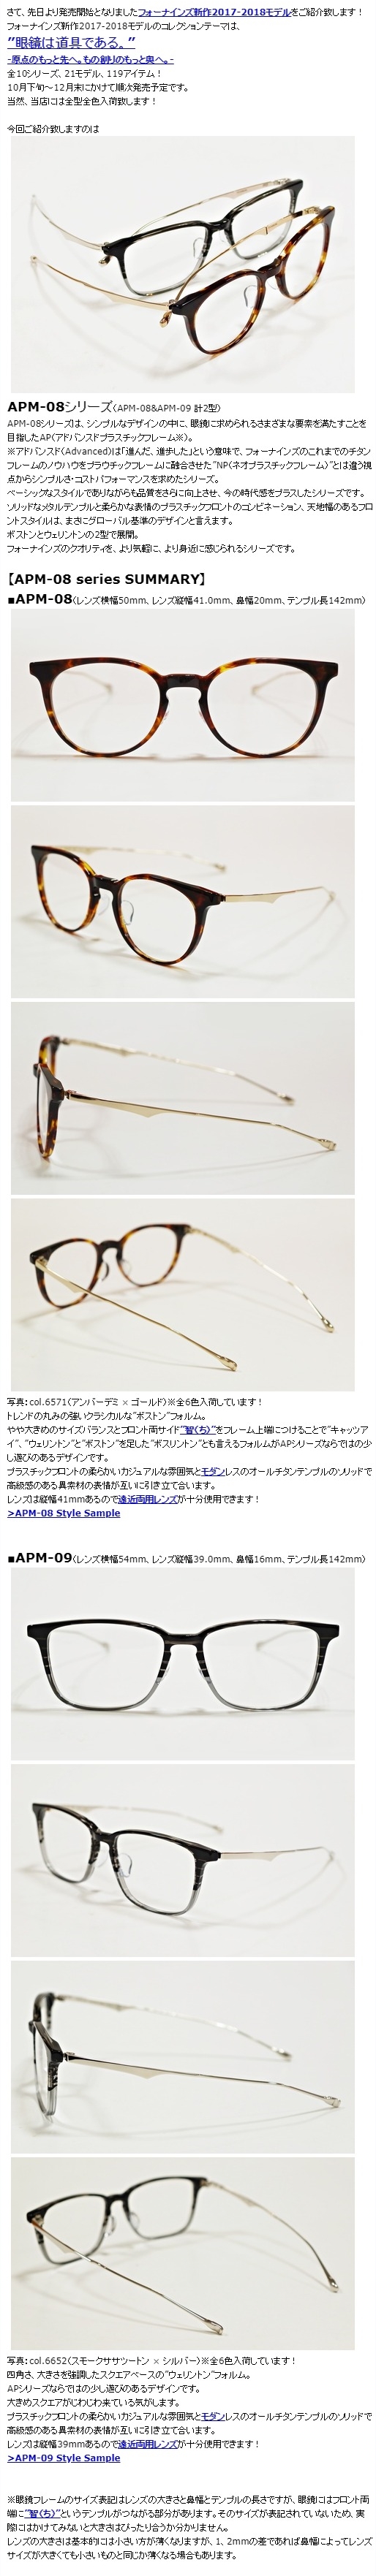 きます】 999.9 - 999.9 フォーナインズ 眼鏡 メガネ APM-08 ケース 